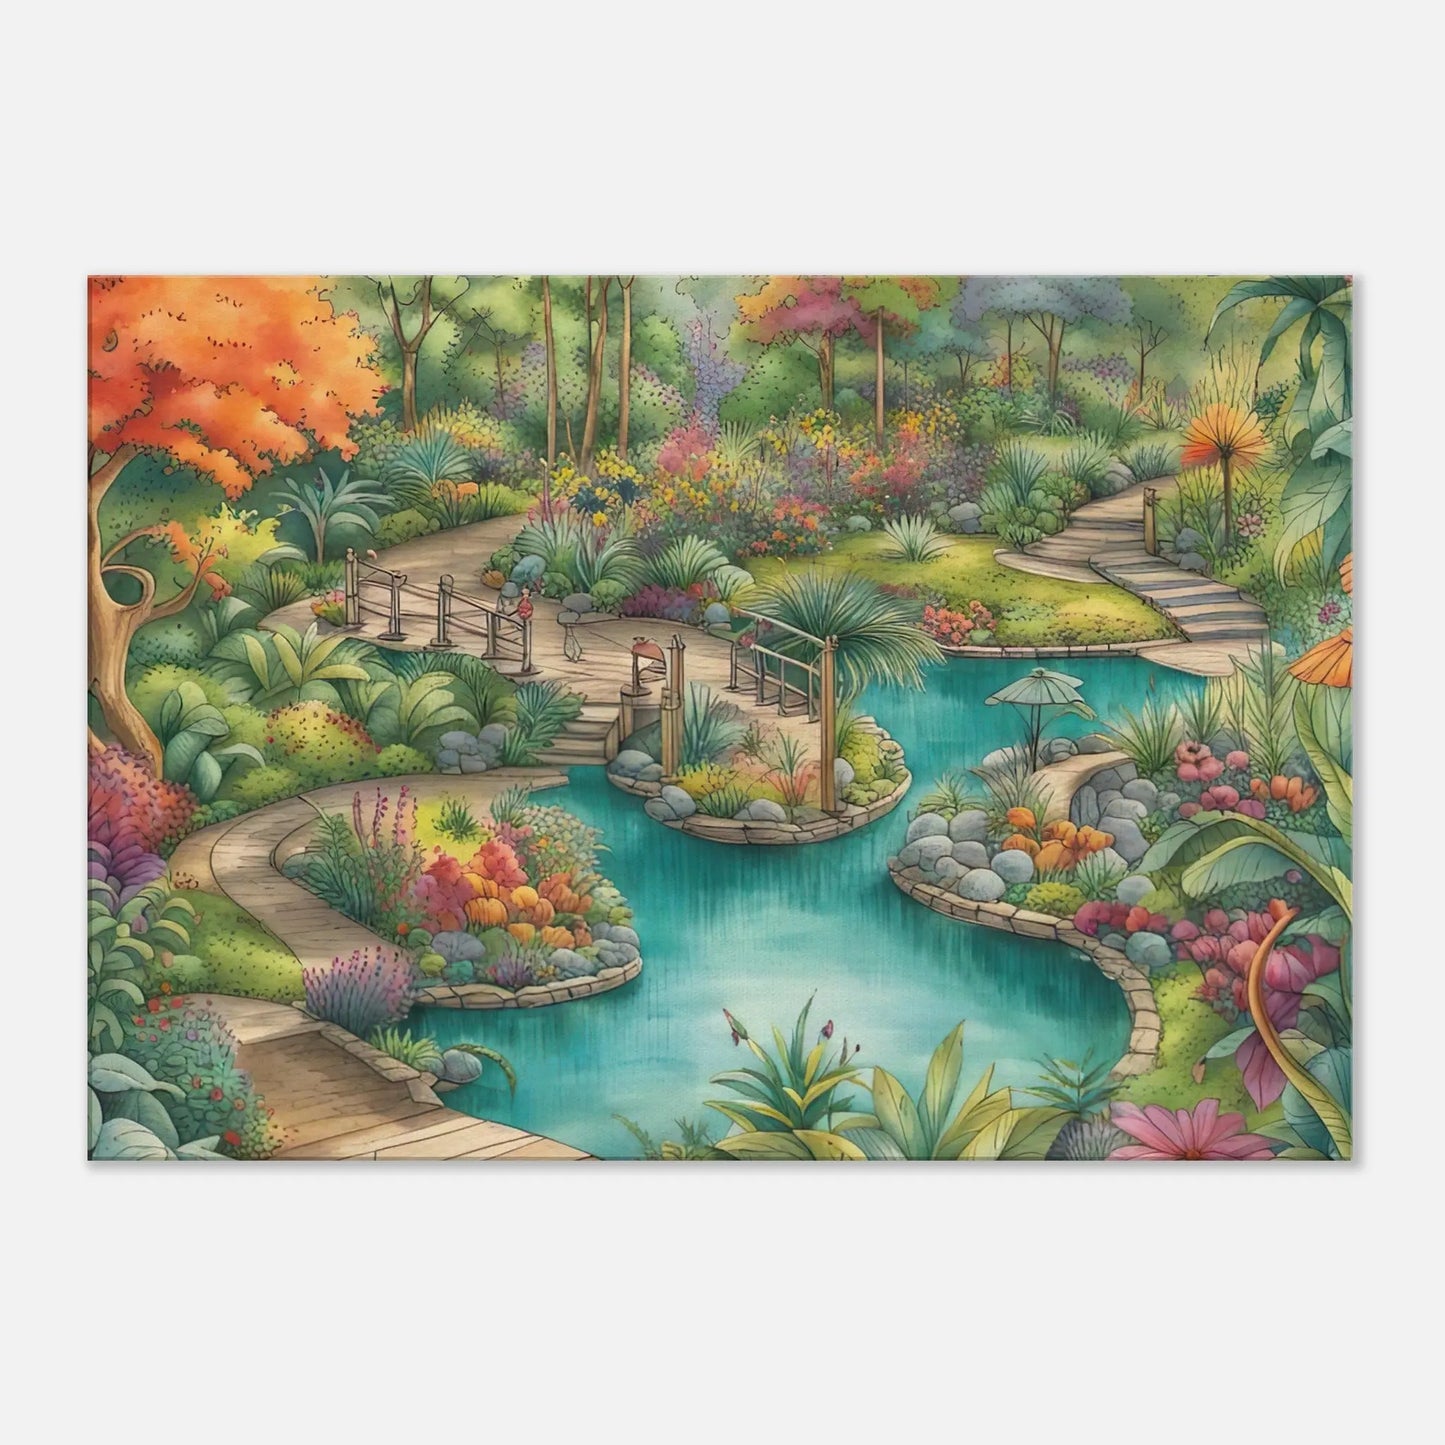 Leinwandbild - Garten mit Teich - Malerischer Stil, KI-Kunst - RolConArt, Landschaften, 70x100-cm-28x40